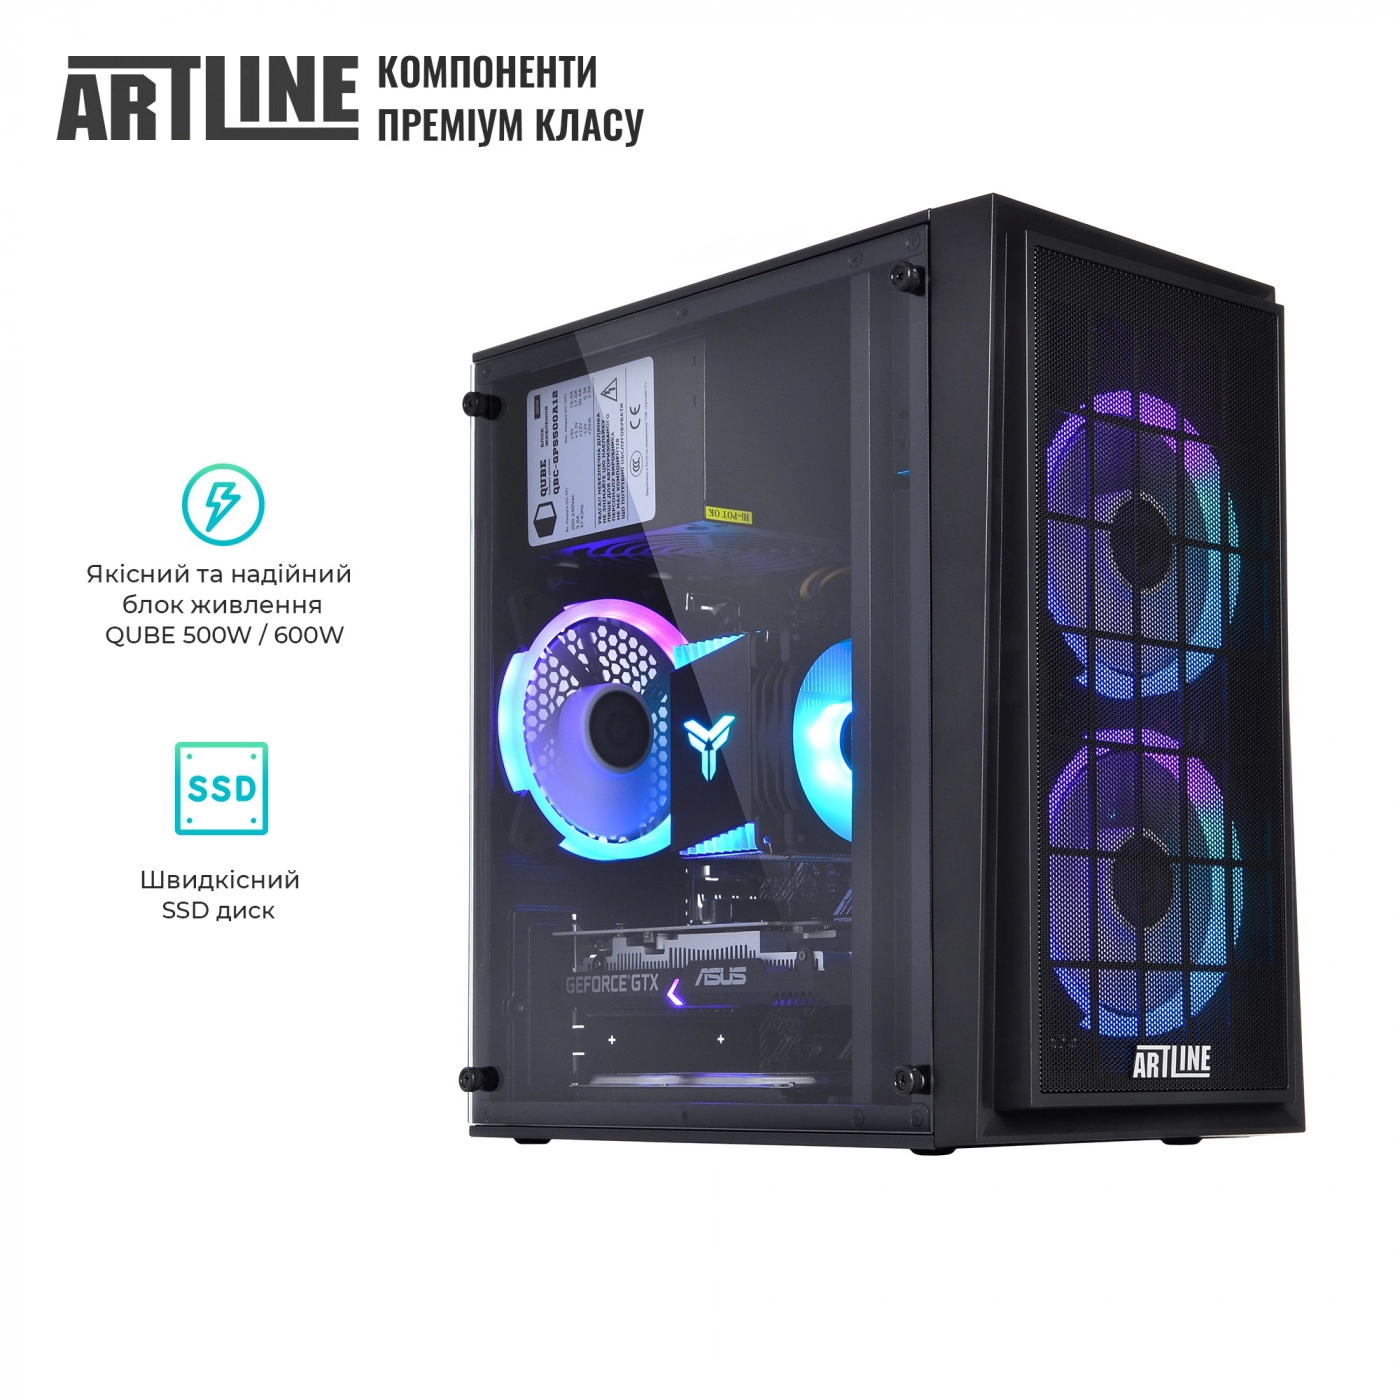 Купить Компьютер ARTLINE Gaming X43v23 - фото 8